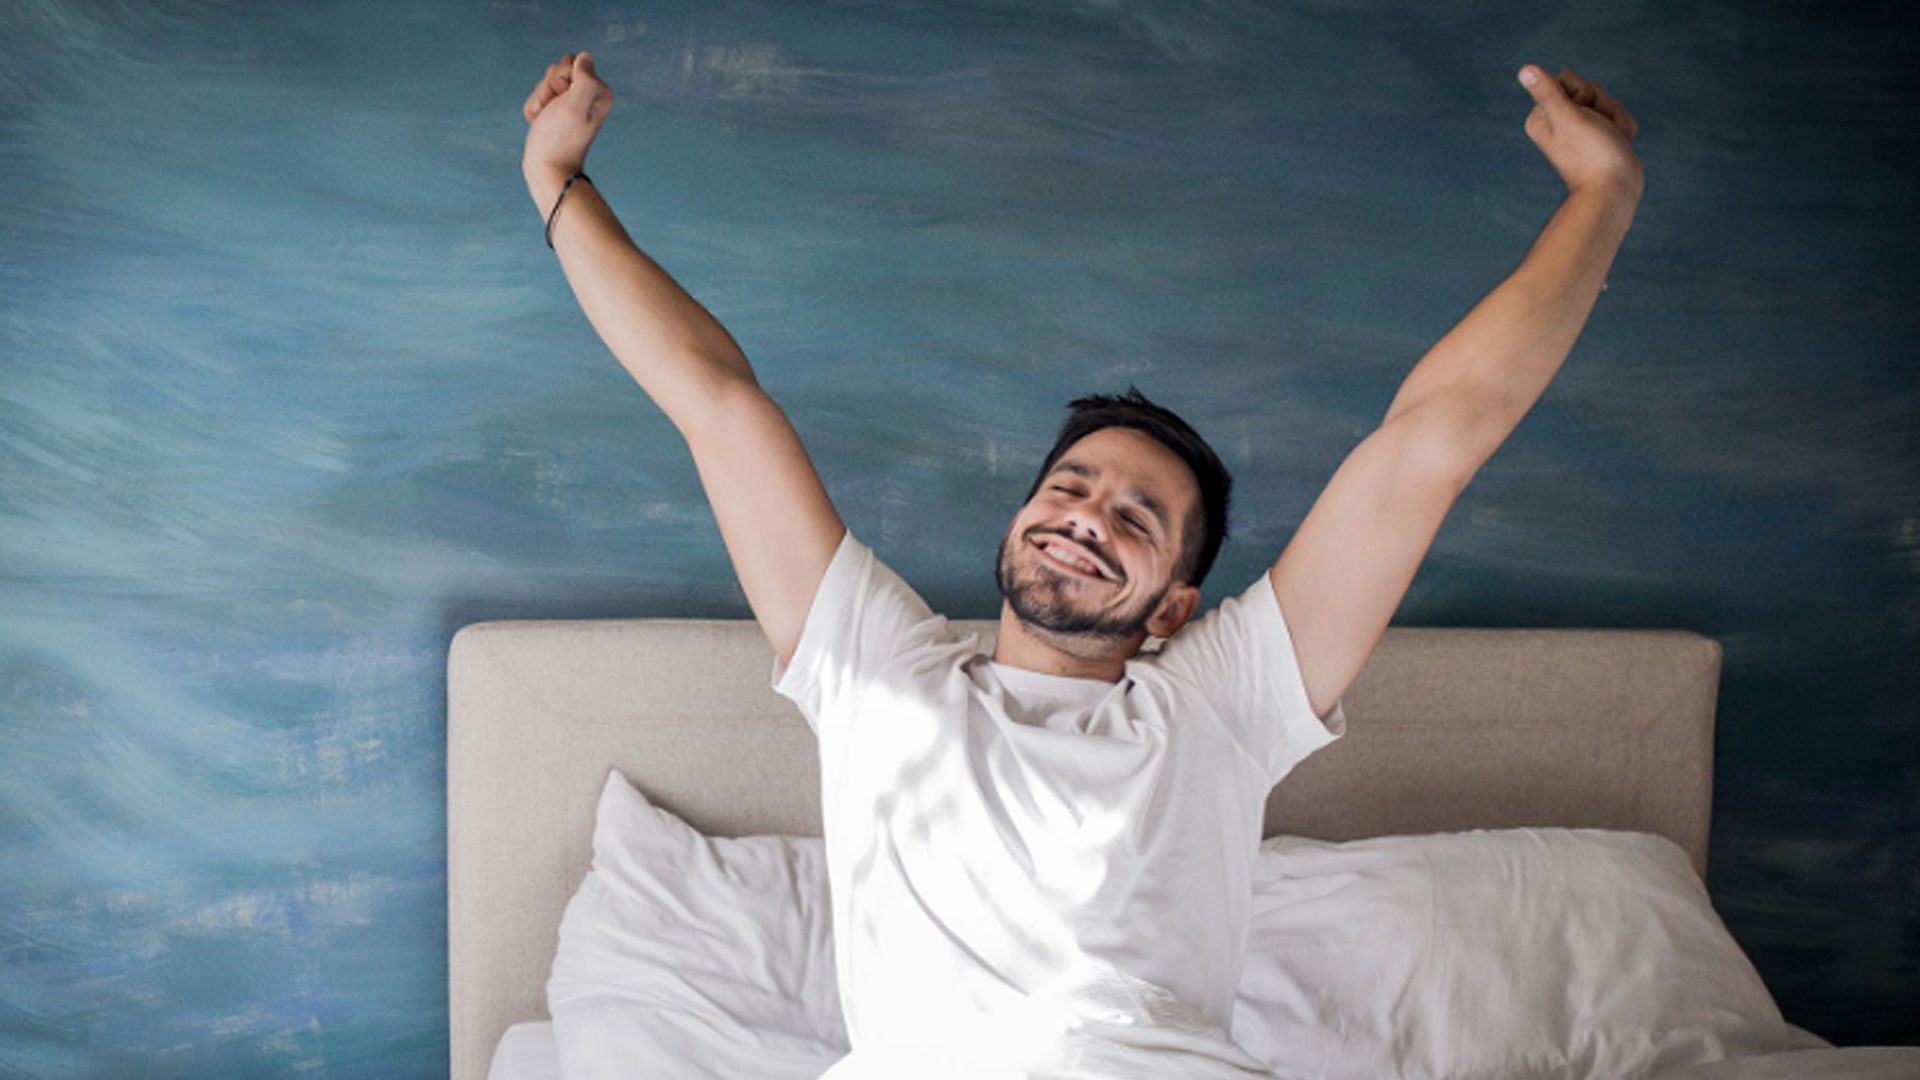 Tener un sueño placentero trae beneficios para la salud mental
(Getty Images)